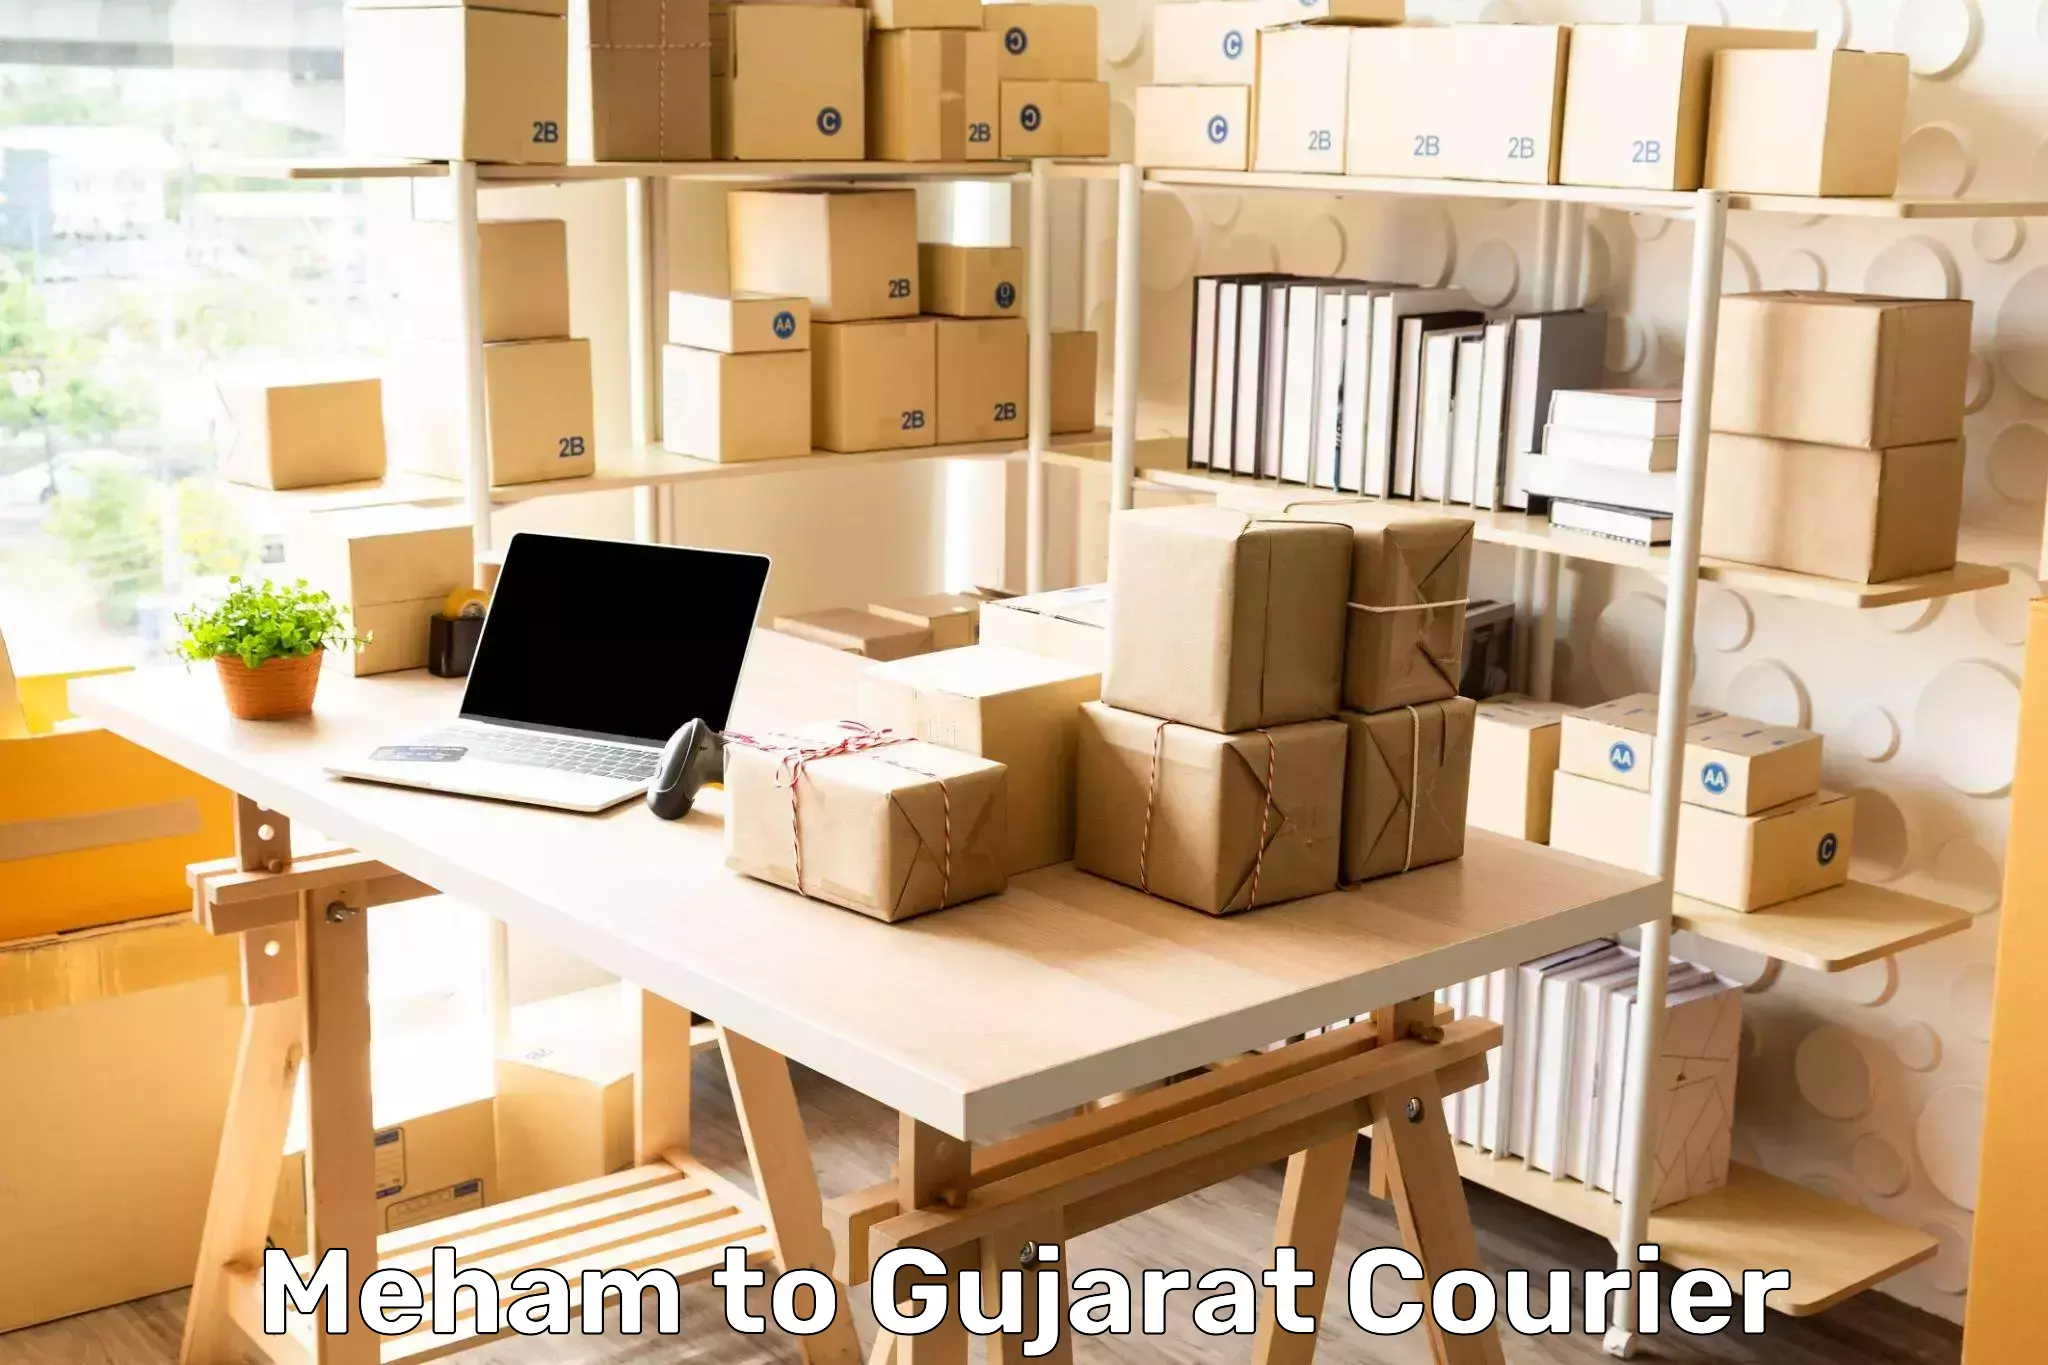 Customer-centric shipping Meham to Karjan